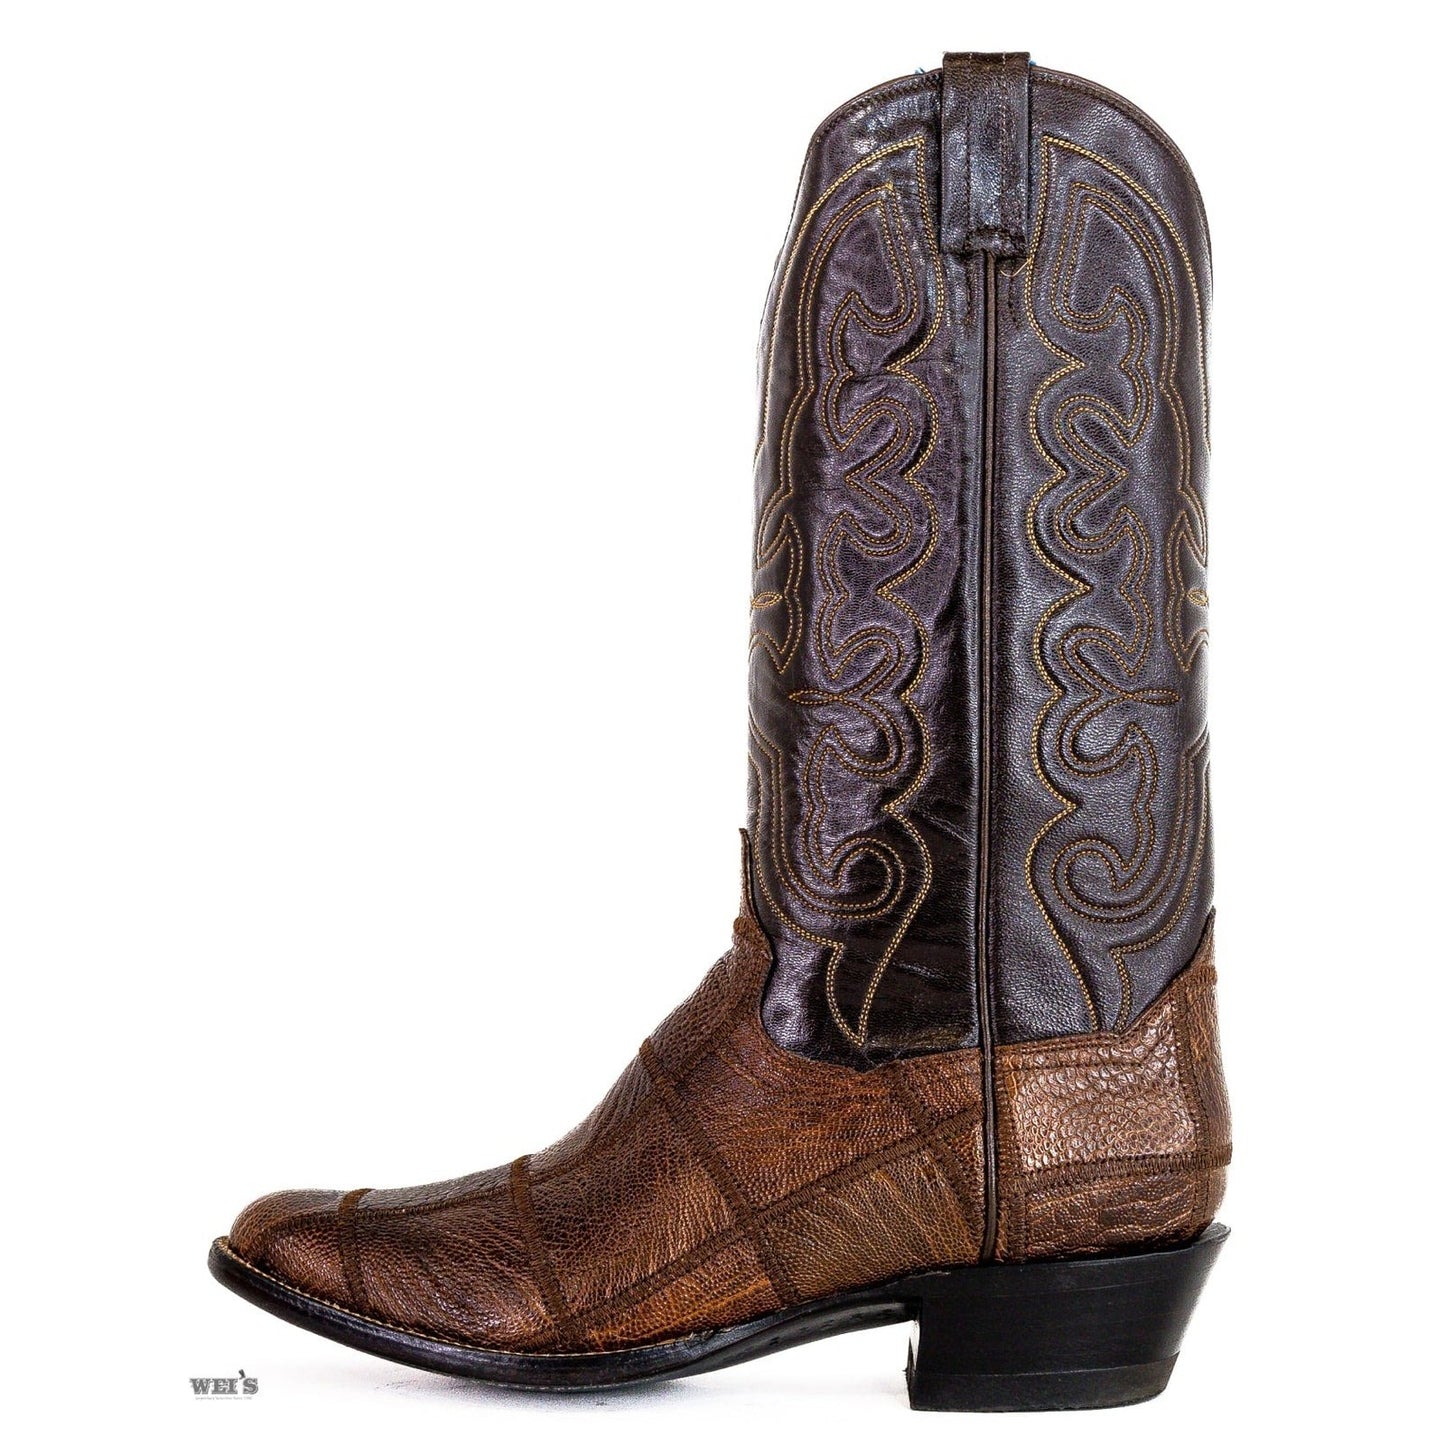 Panhandle Slim Men's Cowboy Boots 14" Exotic Ostrich Leg Patch Cowboy Heel R Toe 15-OSTRICH 25210